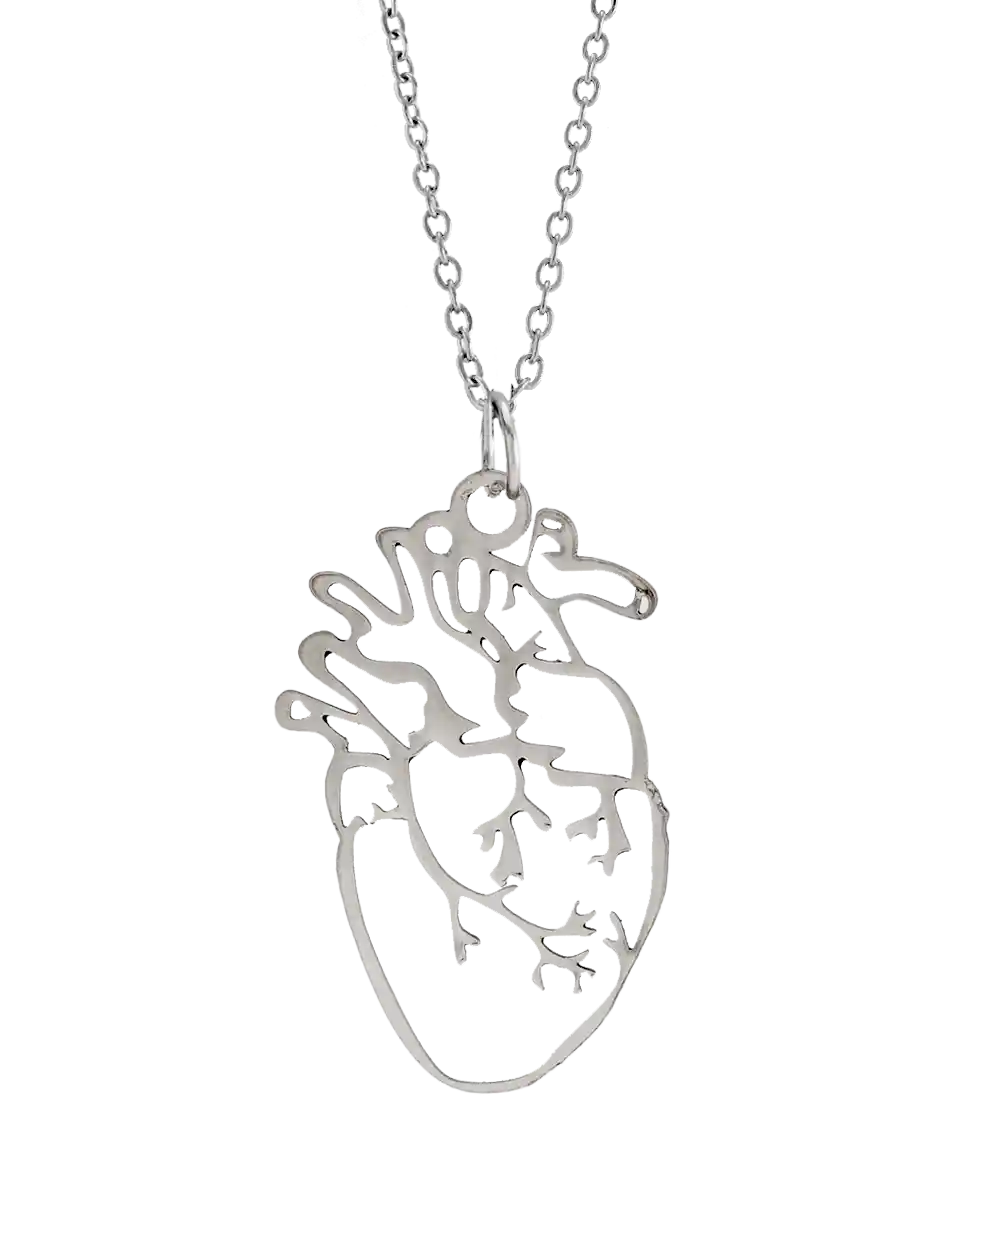 خرید گردنبند مردانه طرح قلب مدل 1833 رنگ نقره ای قیمت 129 هزارتومان به همراه ارسال رایگان به سراسر ایران درب منزل و جعبه ی کادویی